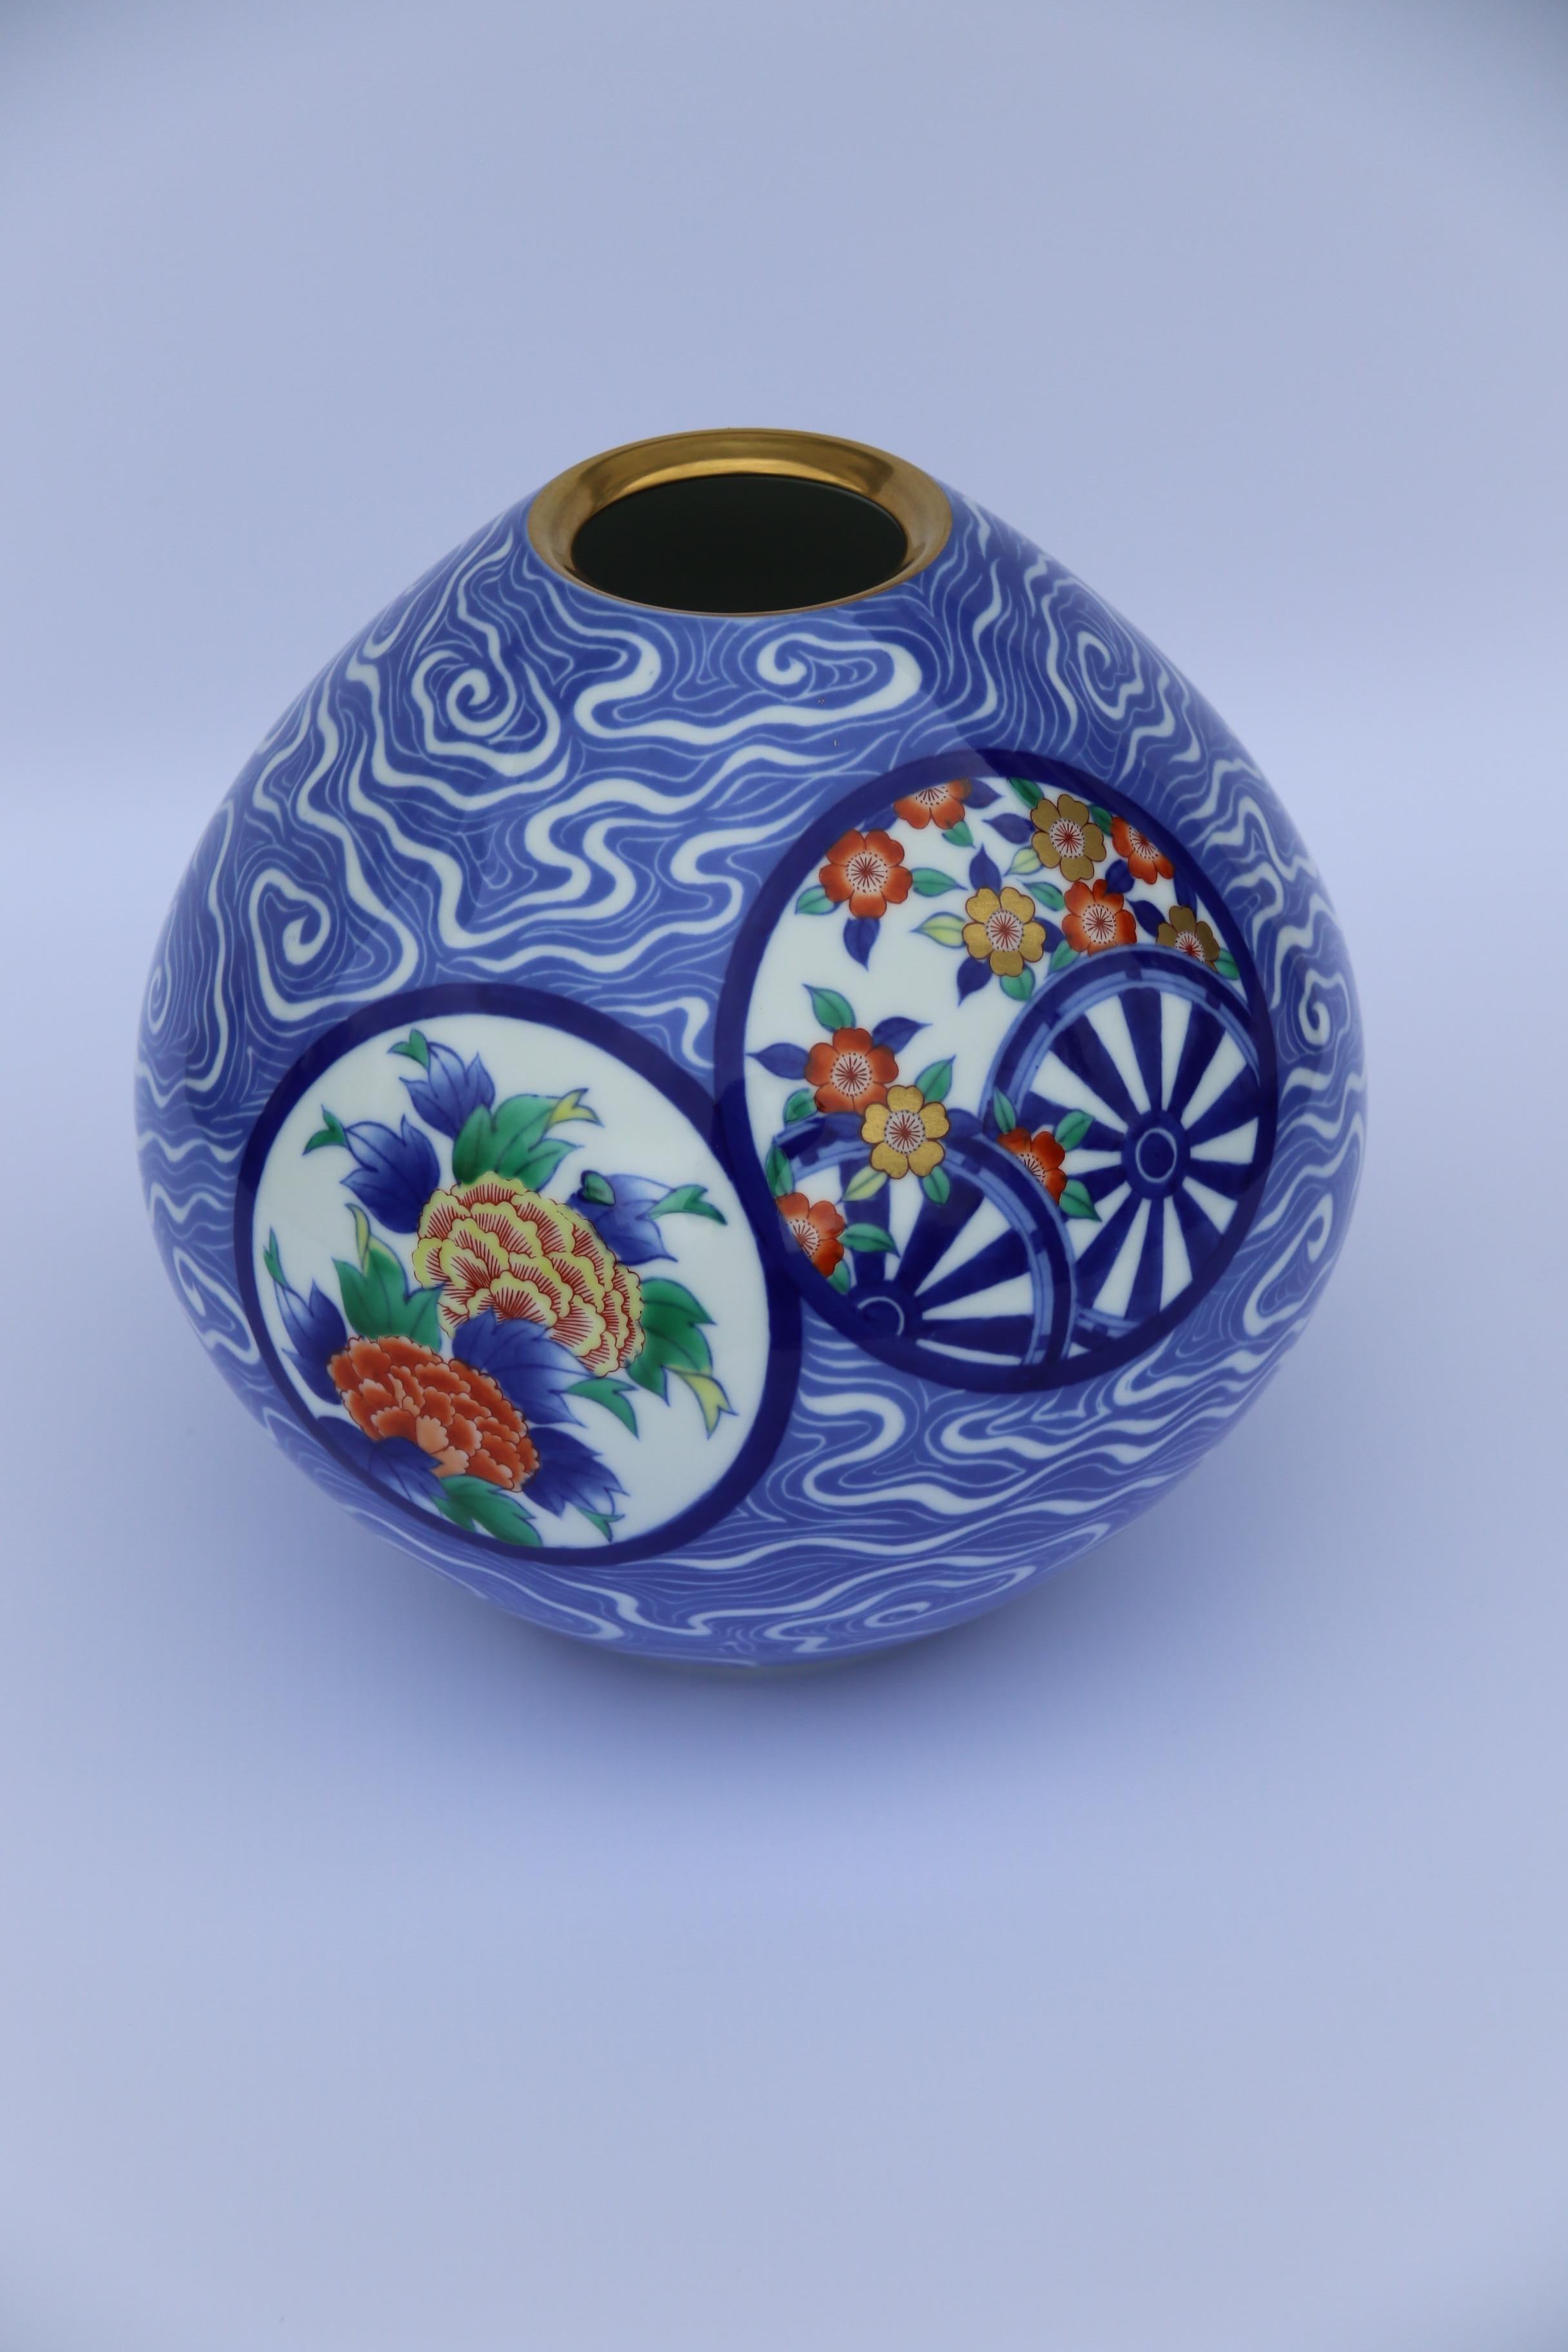 Dieses auffällige Exemplar aus der renommierten japanischen Porzellanmanufaktur Fukagawa ist traditionell von Hand dekoriert, hat aber ein zeitgenössisches Design, das die Zeit seiner Herstellung um 1940 widerspiegelt. Die schlichte, bauchige Form